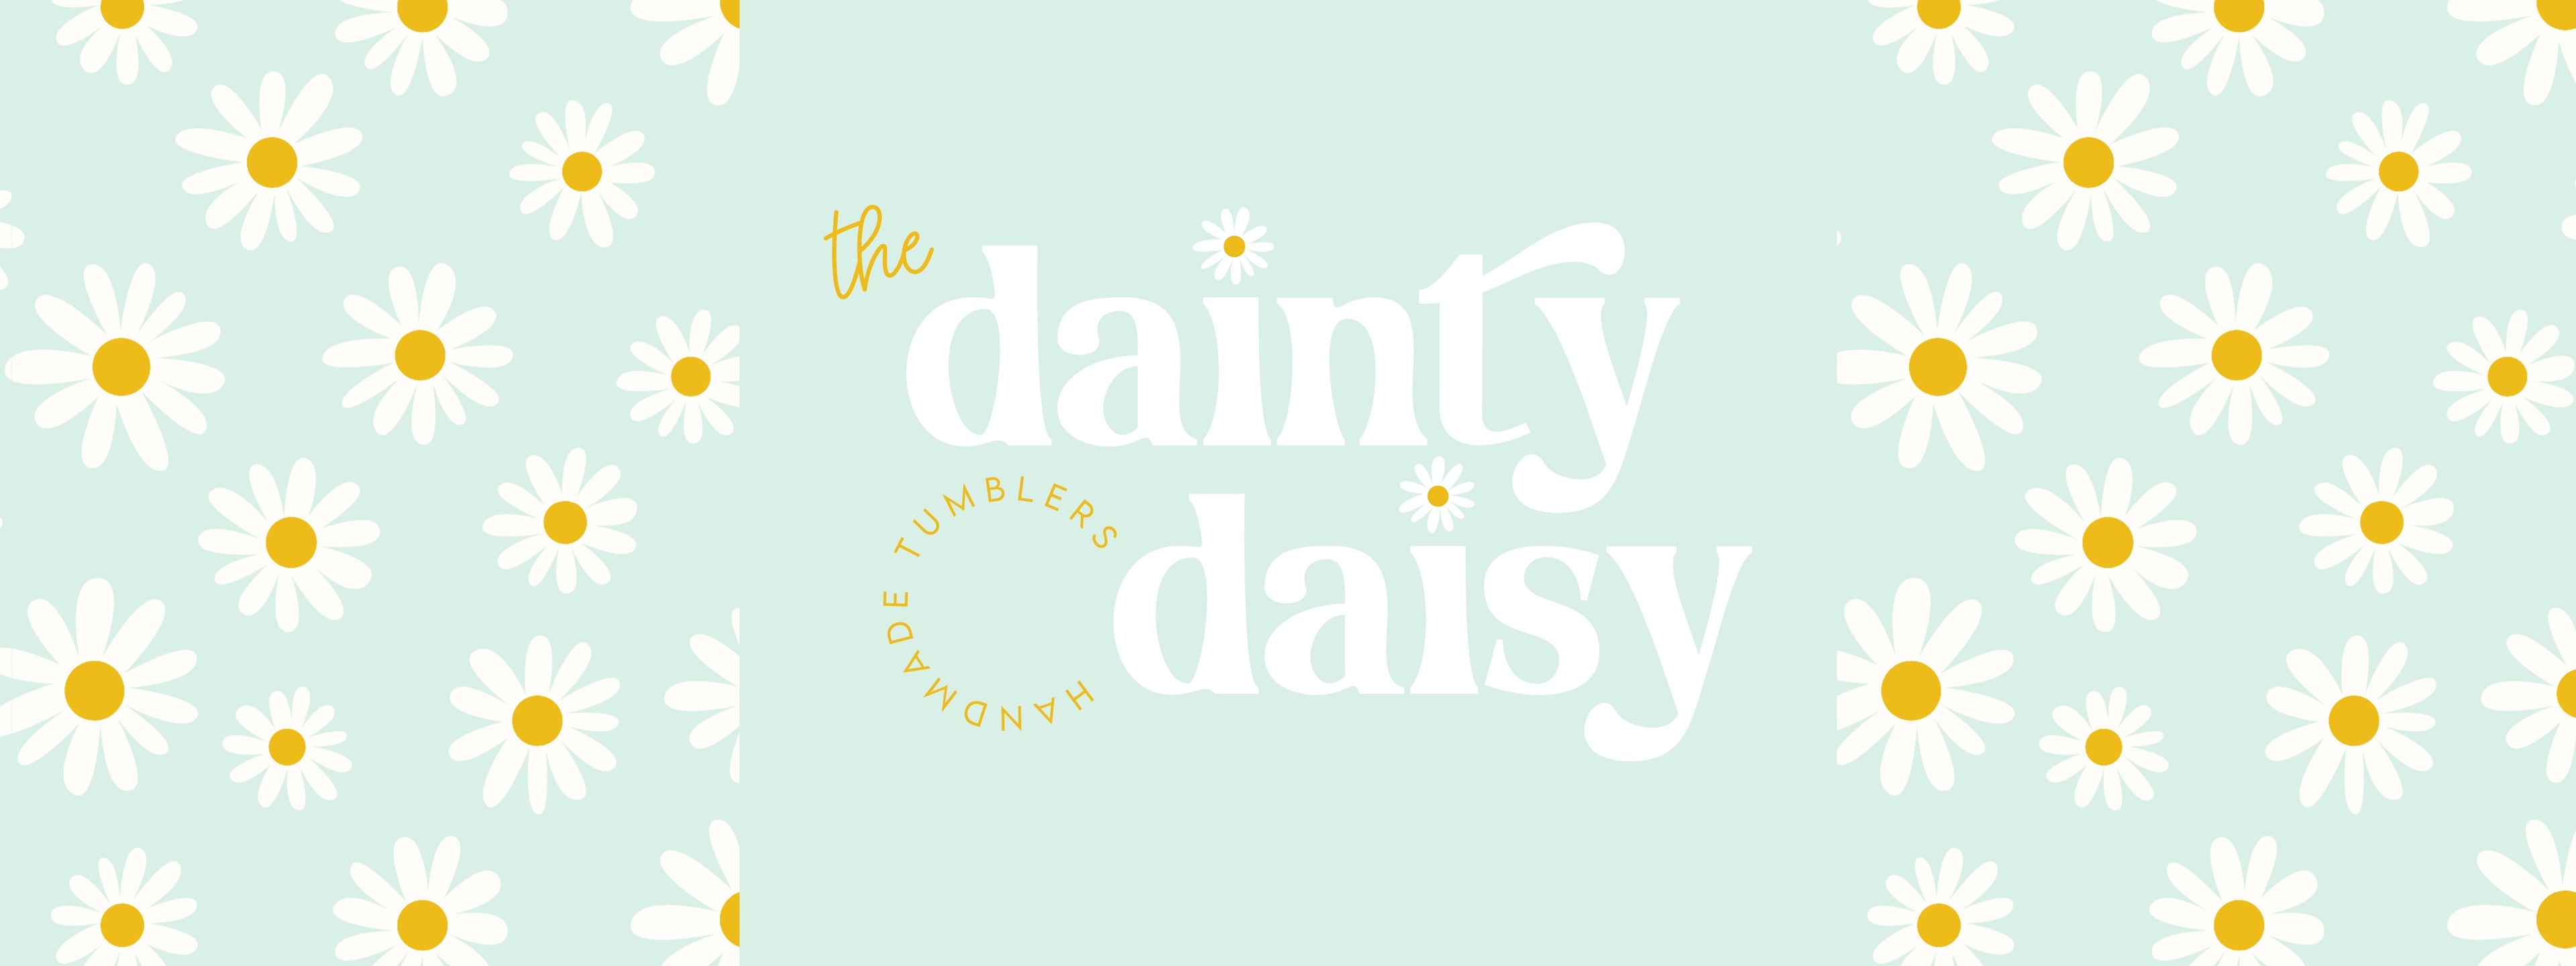 The Dainty Daisy